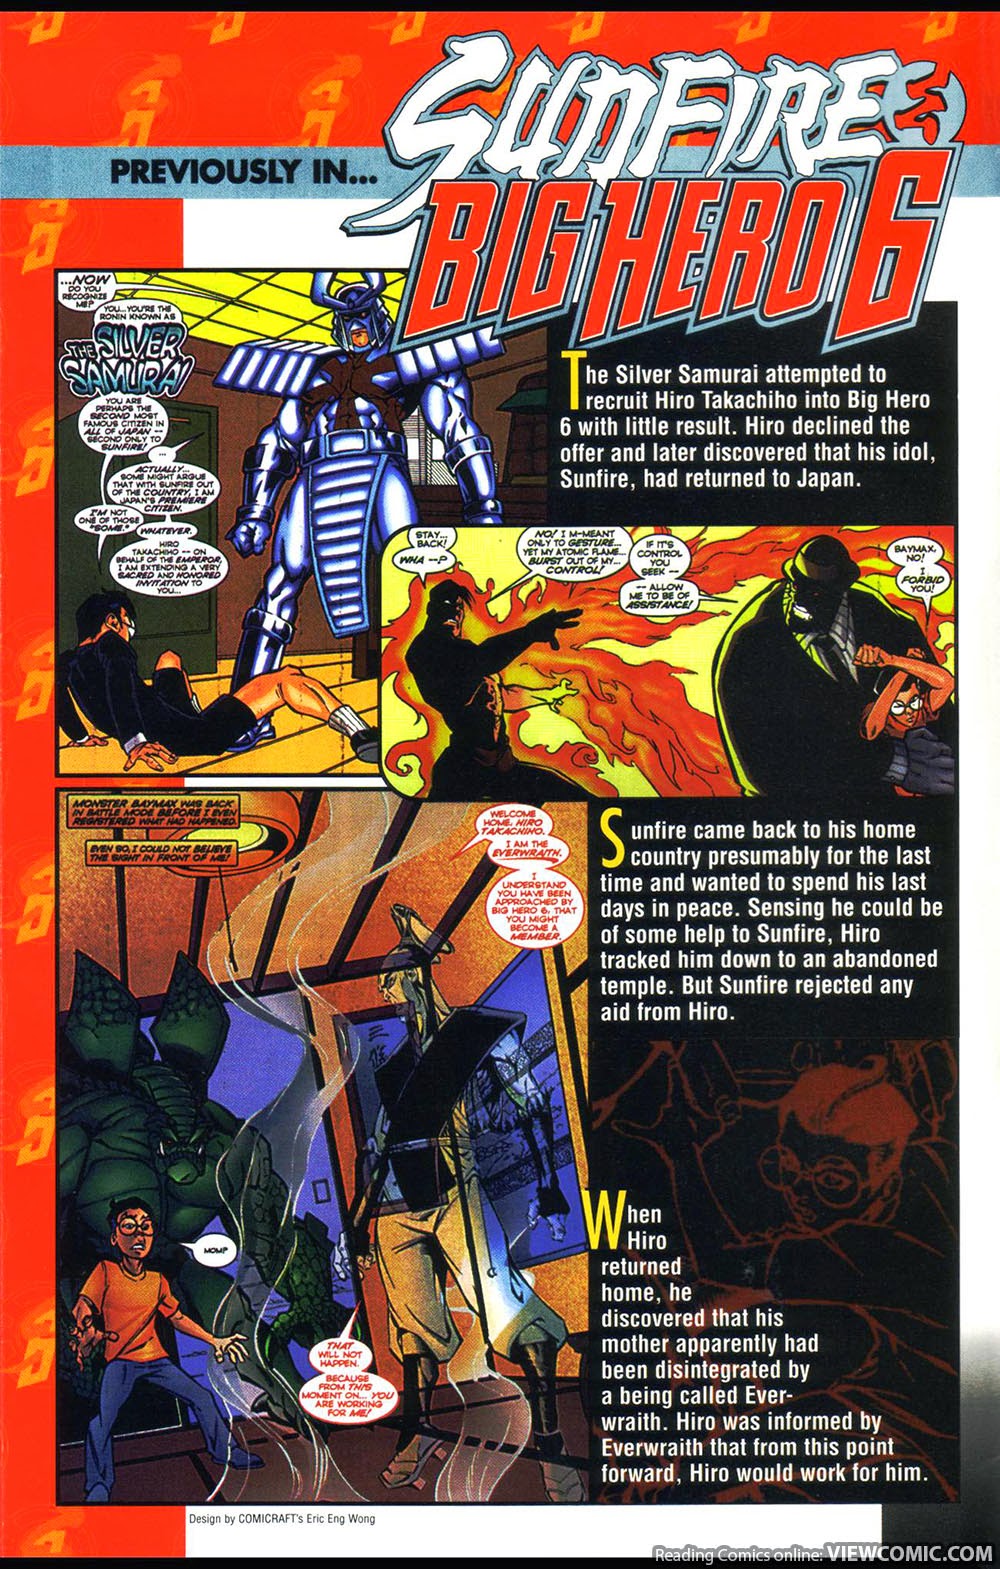 Sunfire Big Hero Six 002 | Read Sunfire Big Hero Six 002 comic online in  high quality. Read Full Comic online for free - Read comics online in high  quality .